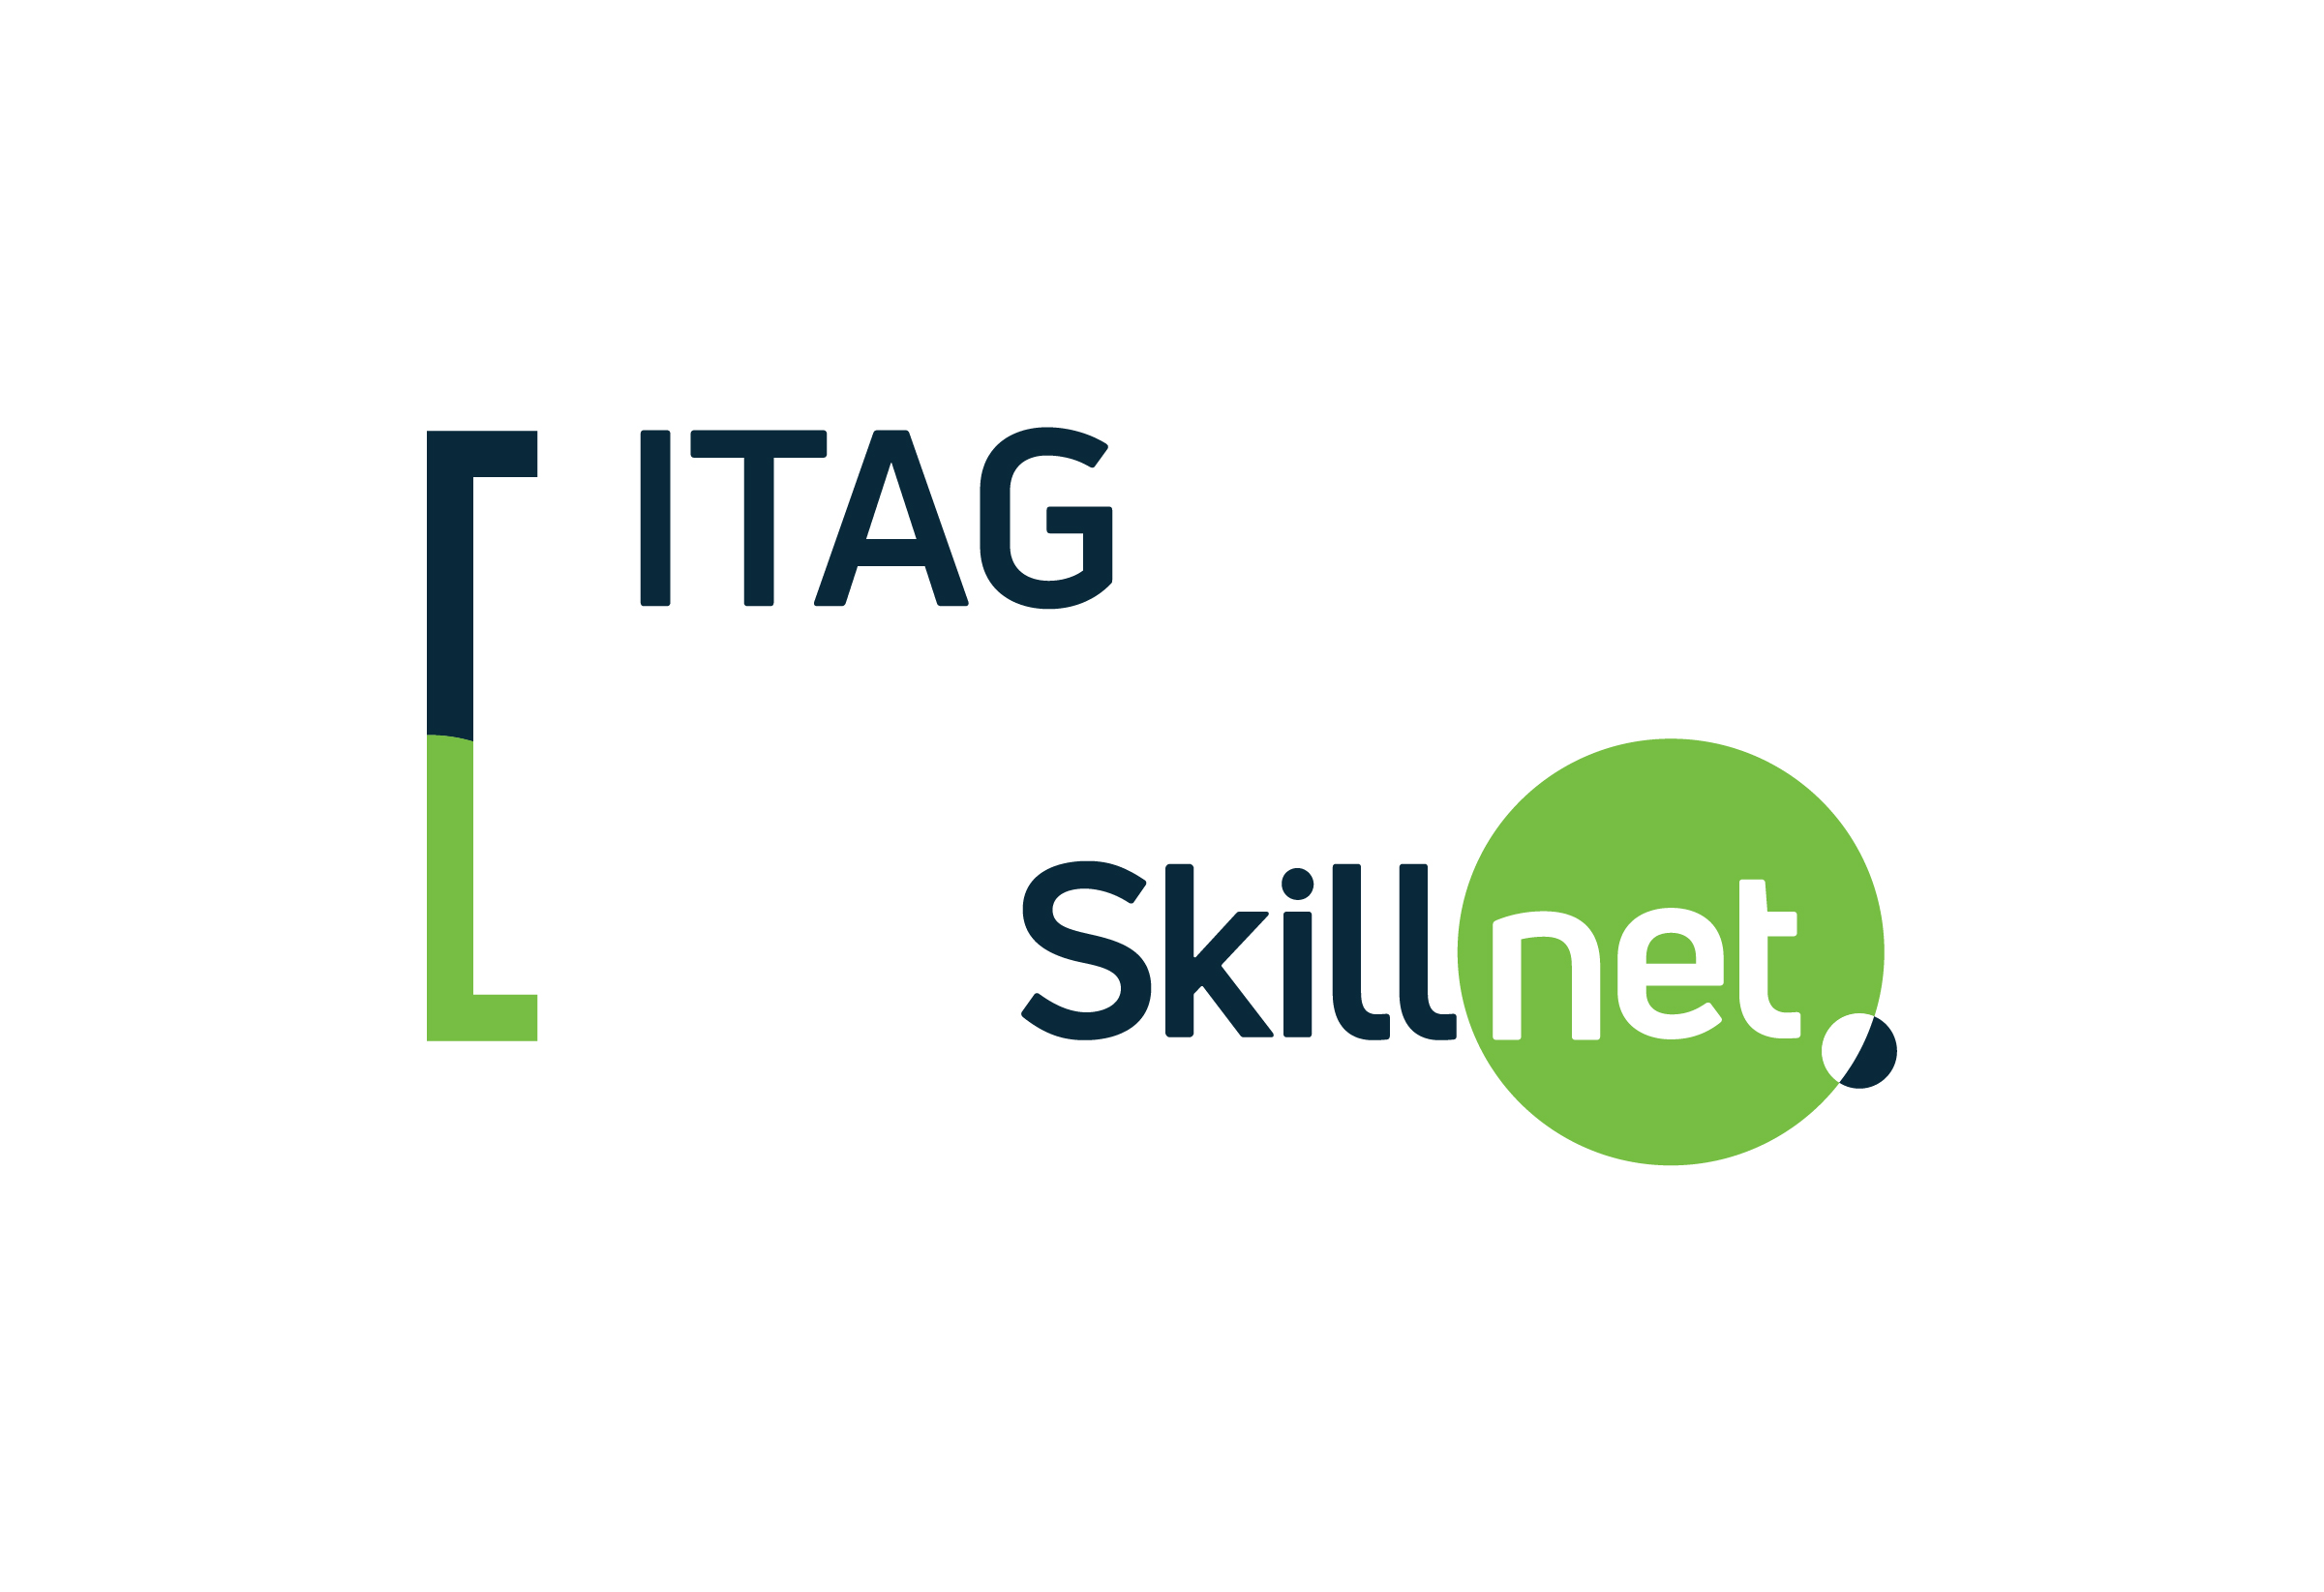 ITAG Skillnet